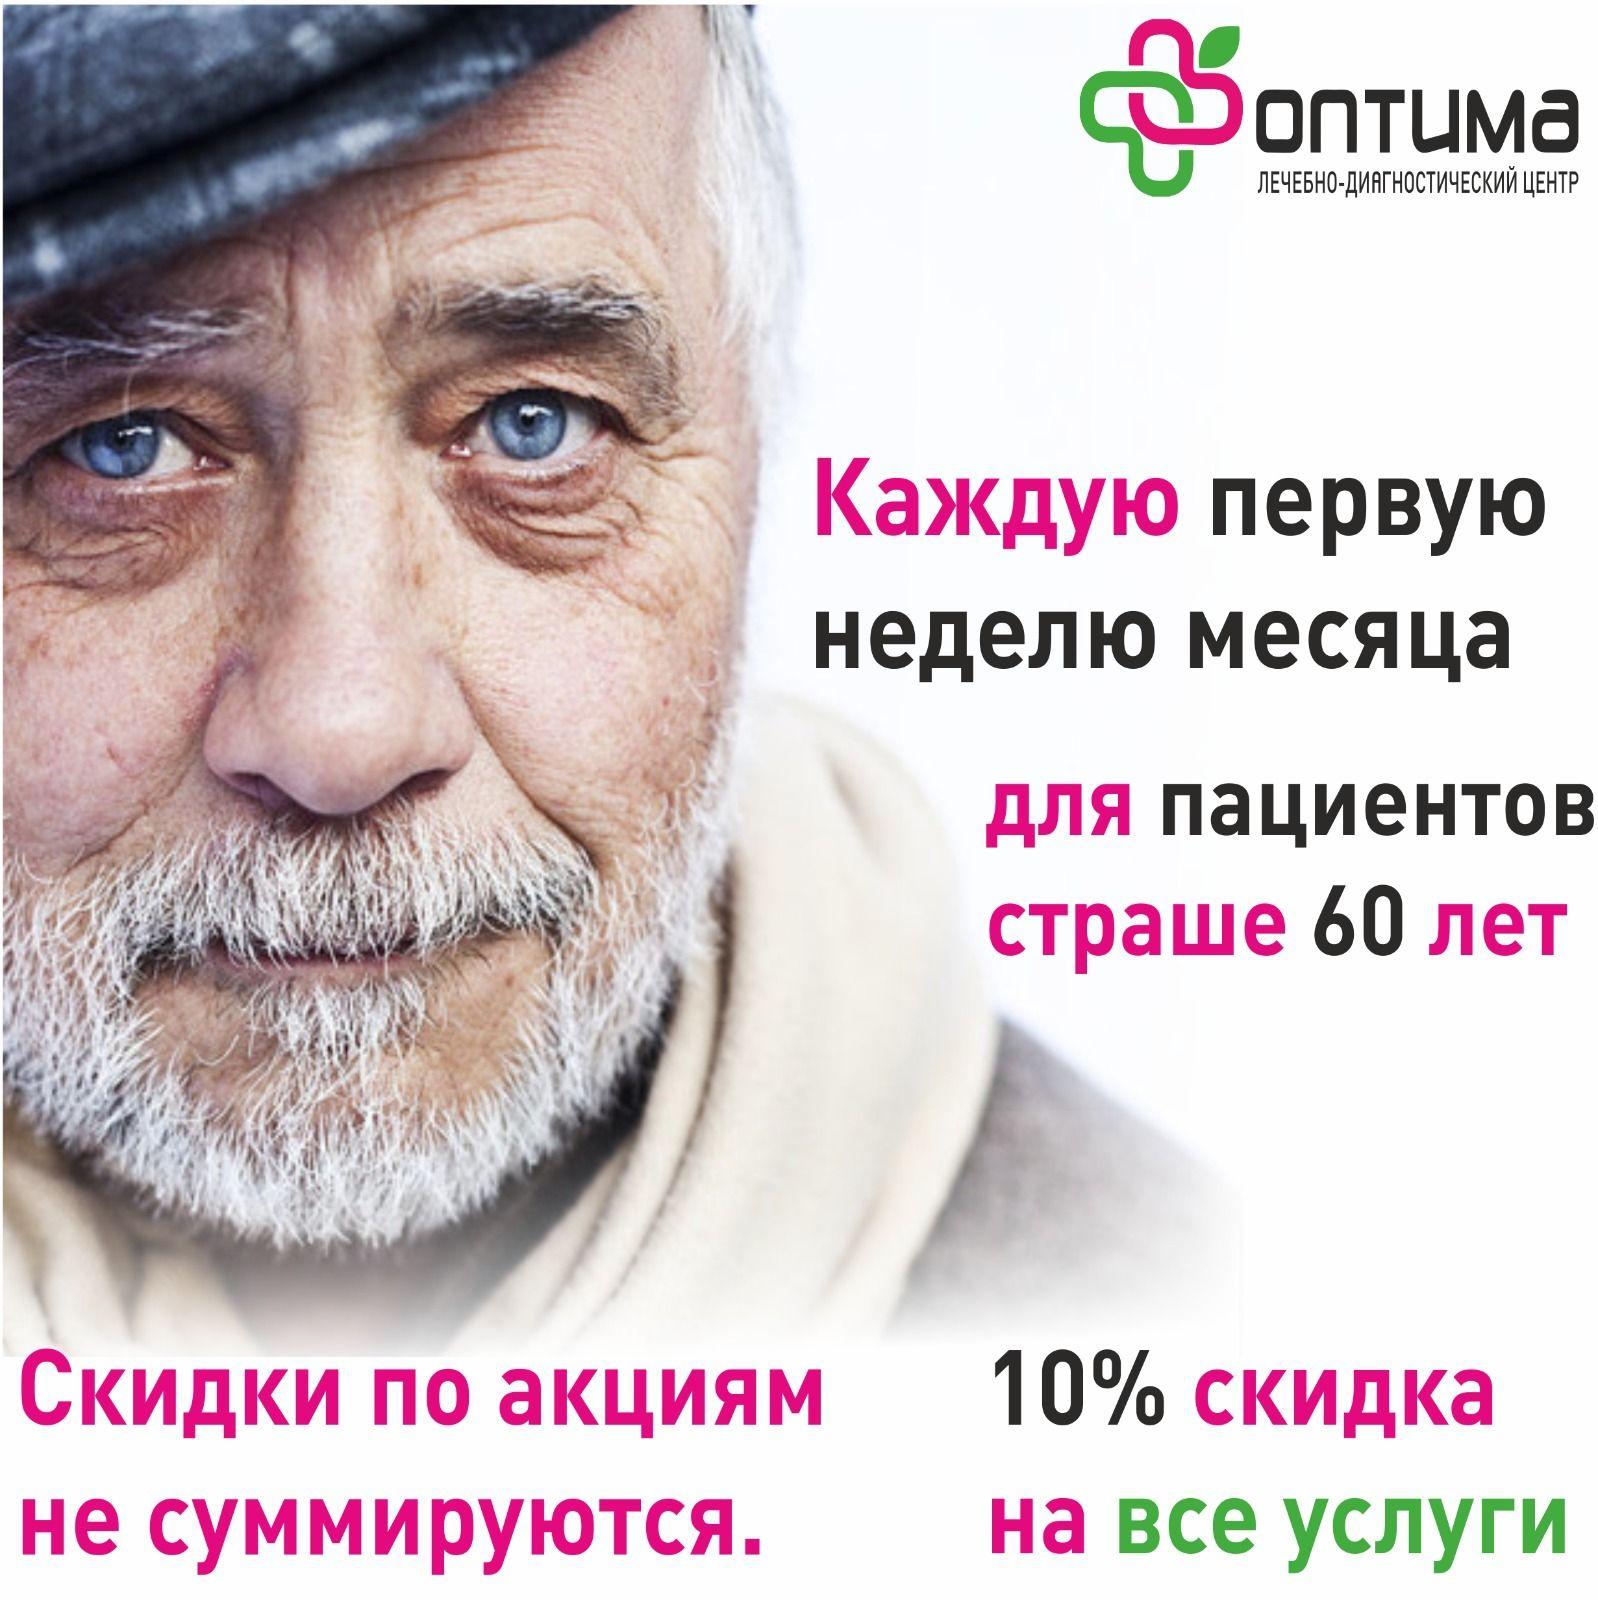 В ЛДЦ Оптима, каждую первую неделю месяца проходит акция, 10% на услуги всем пациентам старше 60 лет